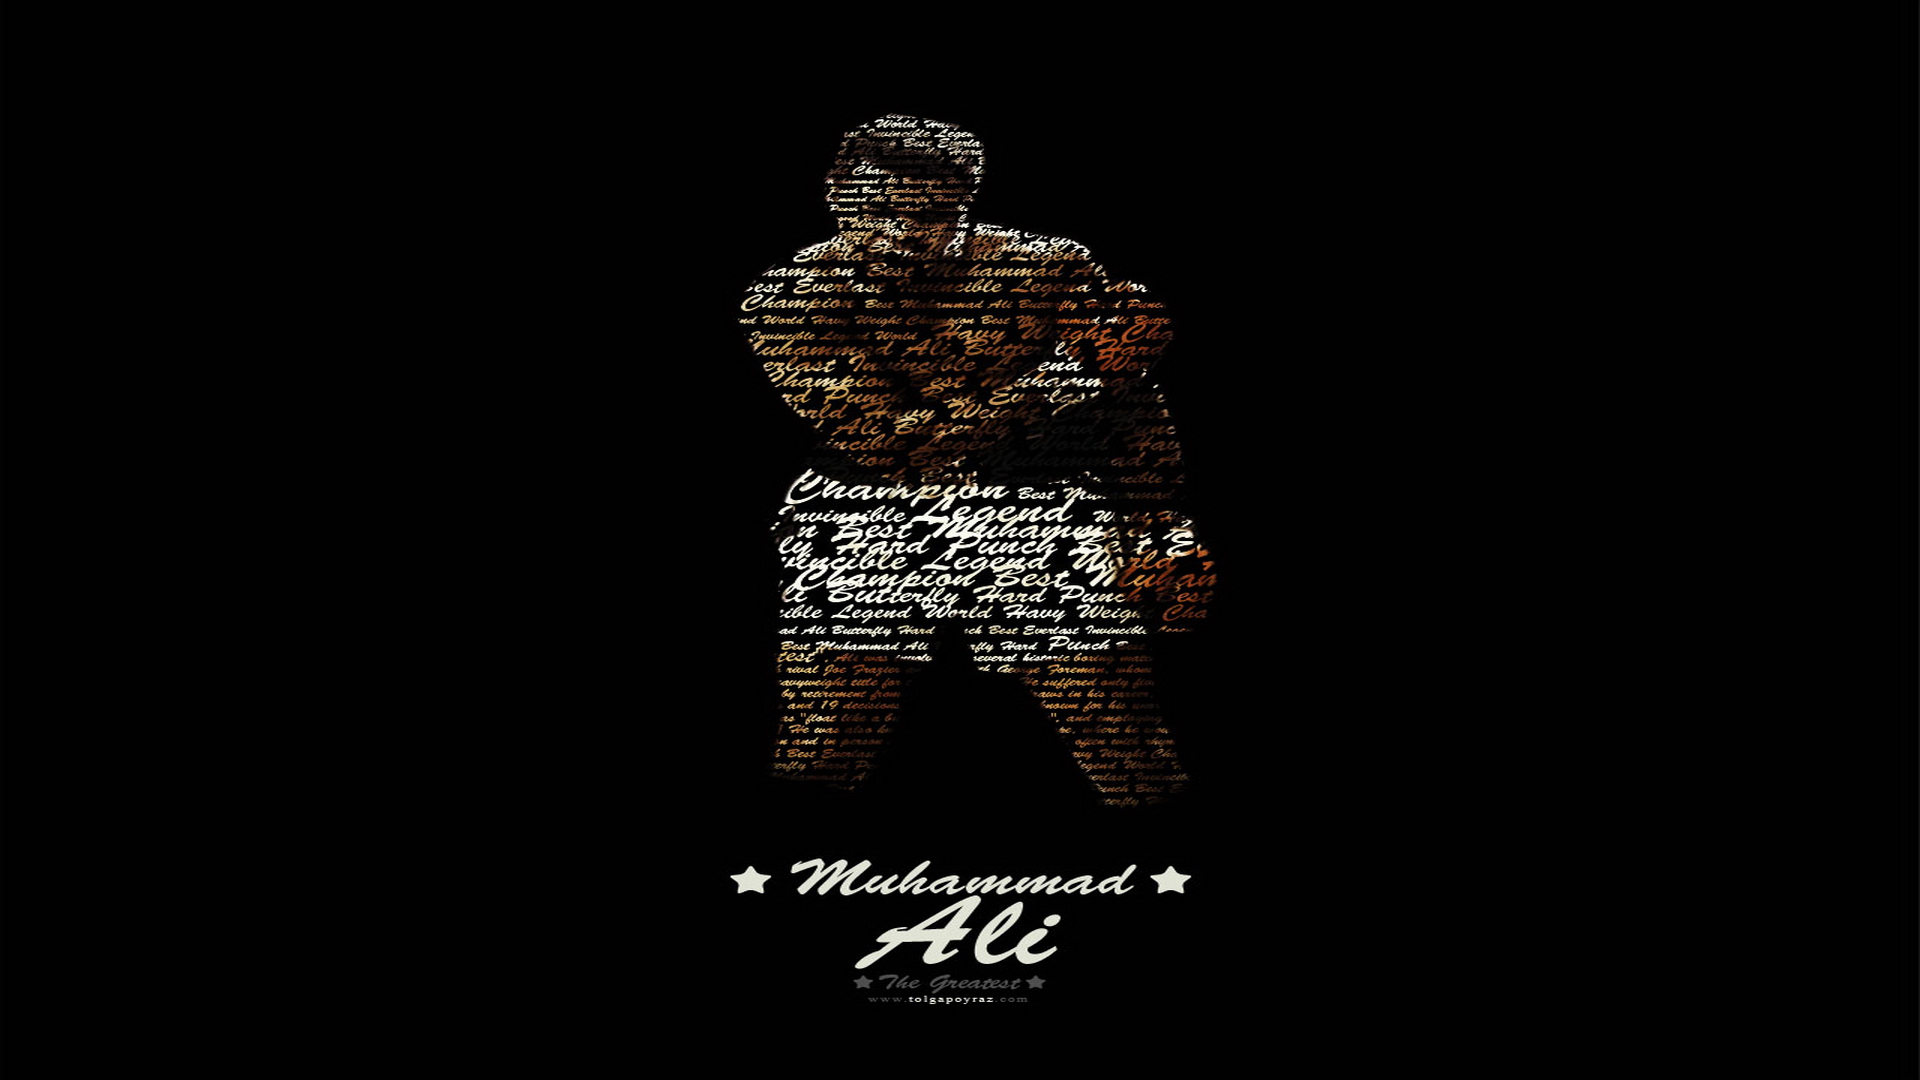 Muhammad Ali Wallpaper Jpg Image Frompo